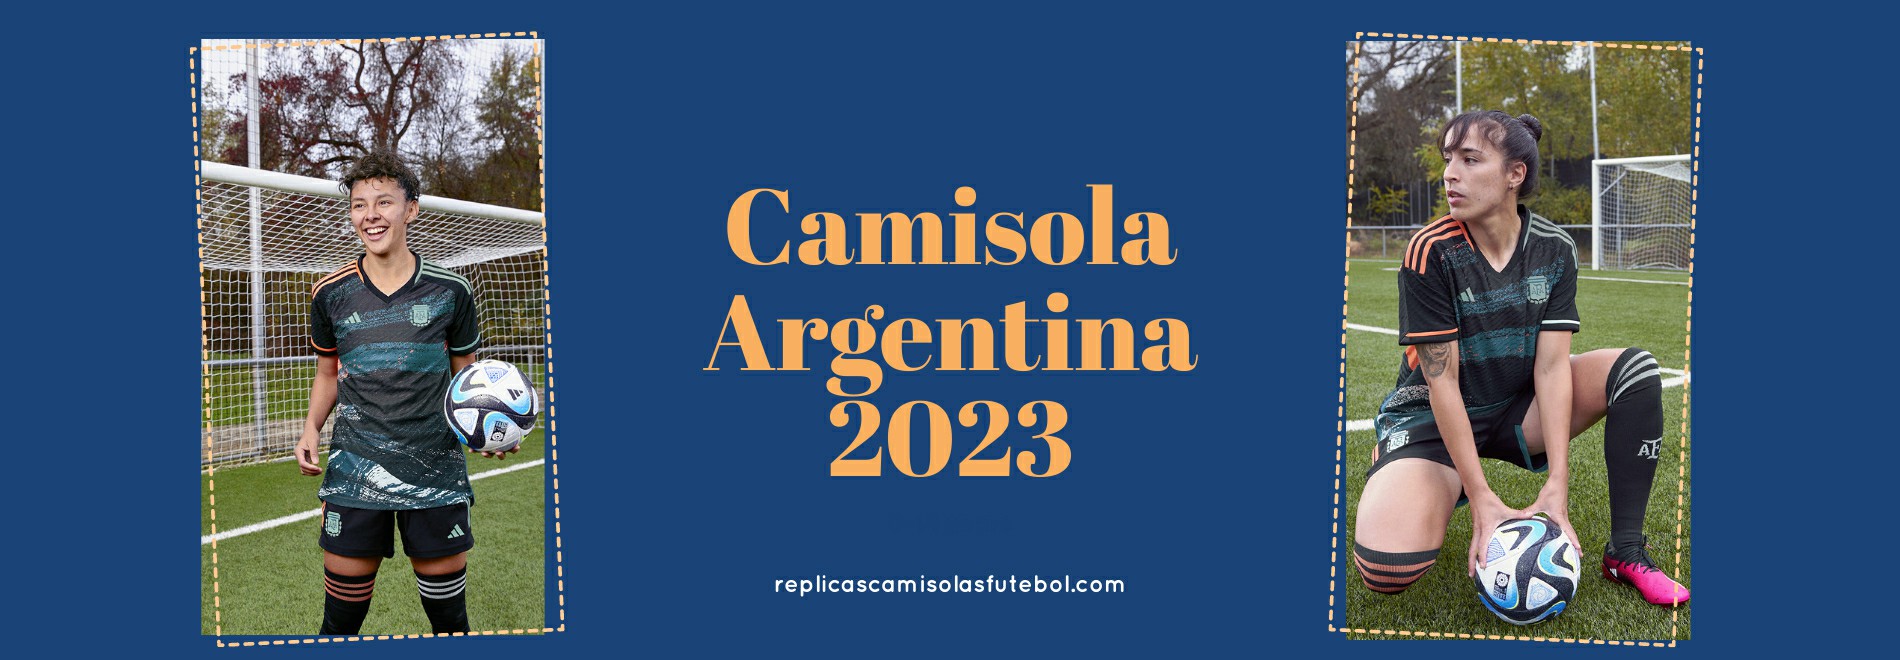 Camisola Argentina 2023-2024